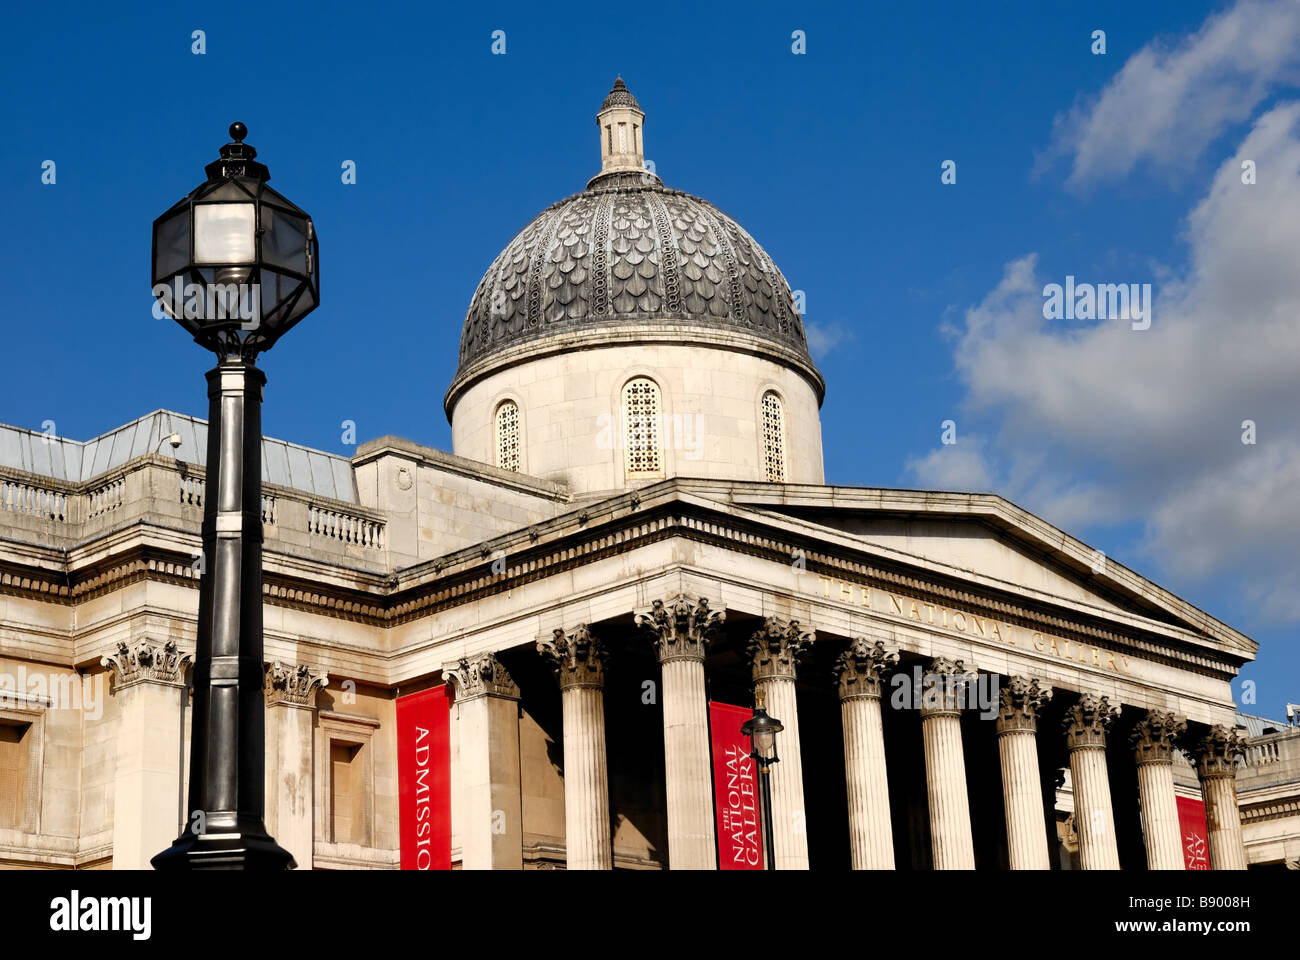 National Gallery facade ,London Stock Photo